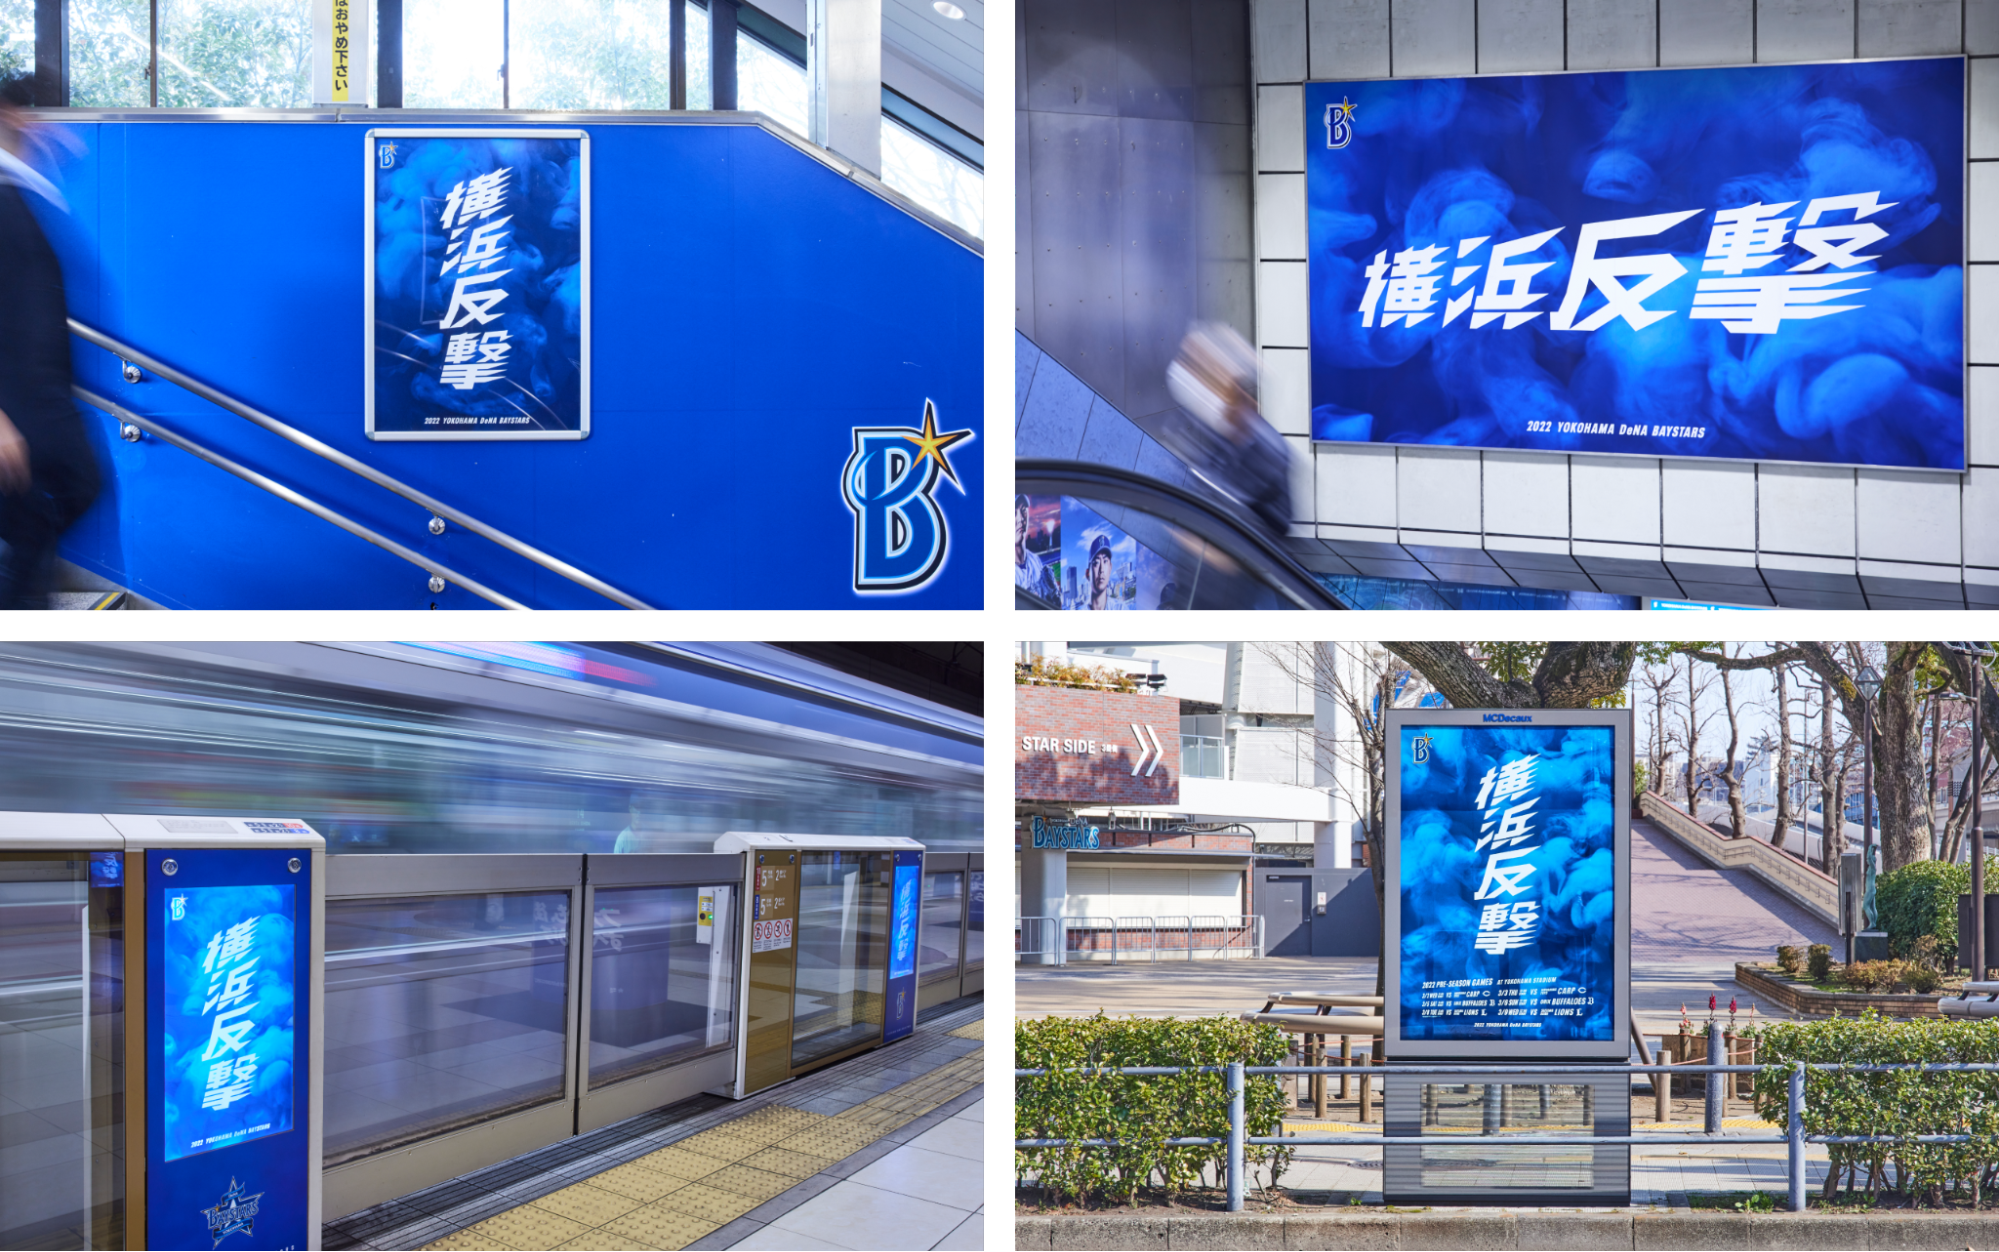 スタジアムの周辺や最寄駅、主要駅（横浜駅）に「横浜反撃」を掲出している写真4枚。